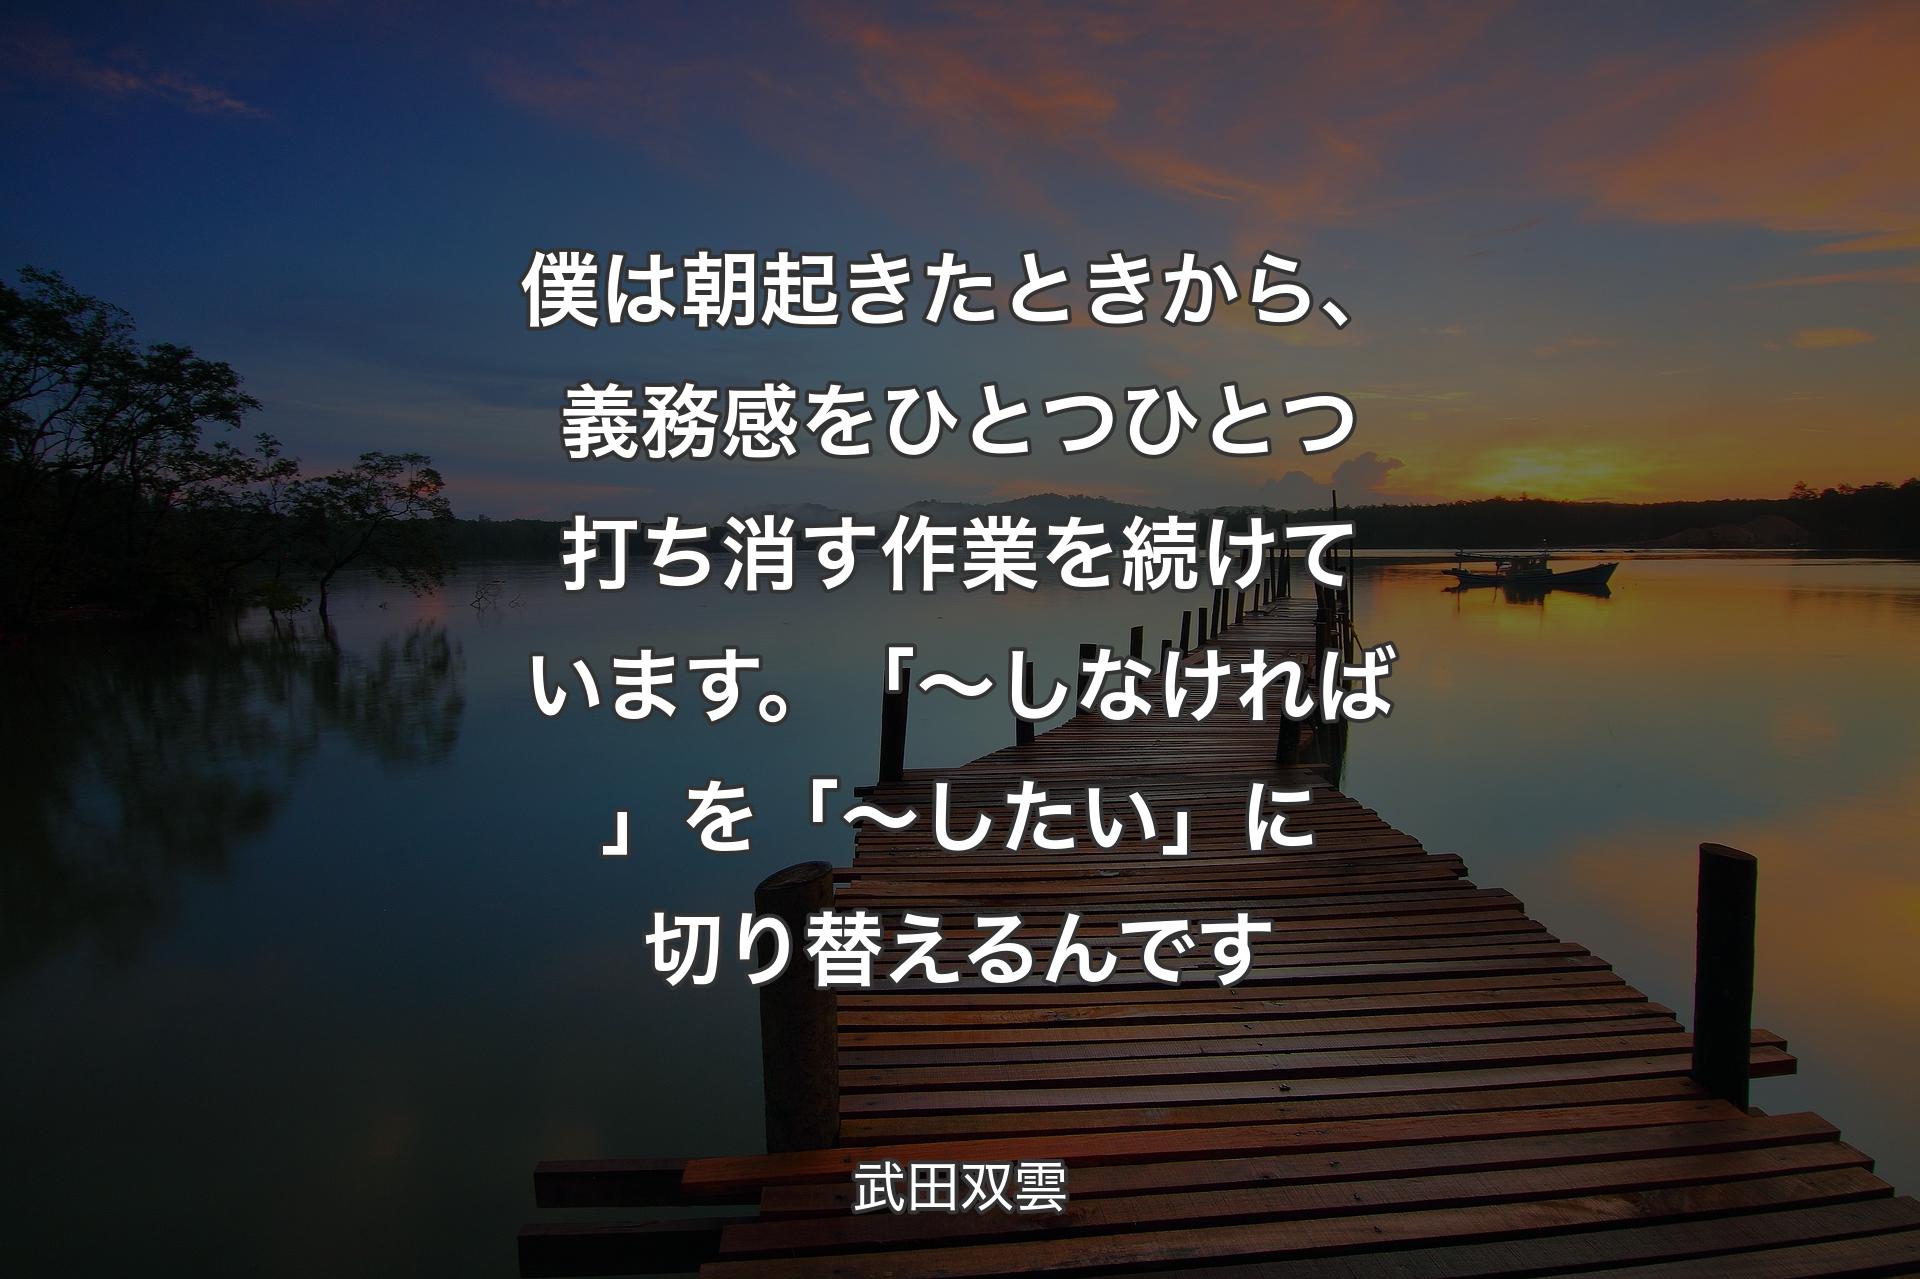 【背景3】僕は朝起きたときから、義務感をひとつひとつ打ち消す作業を続けています。「～しなければ」を「～したい」に切り替えるんです - 武田双雲